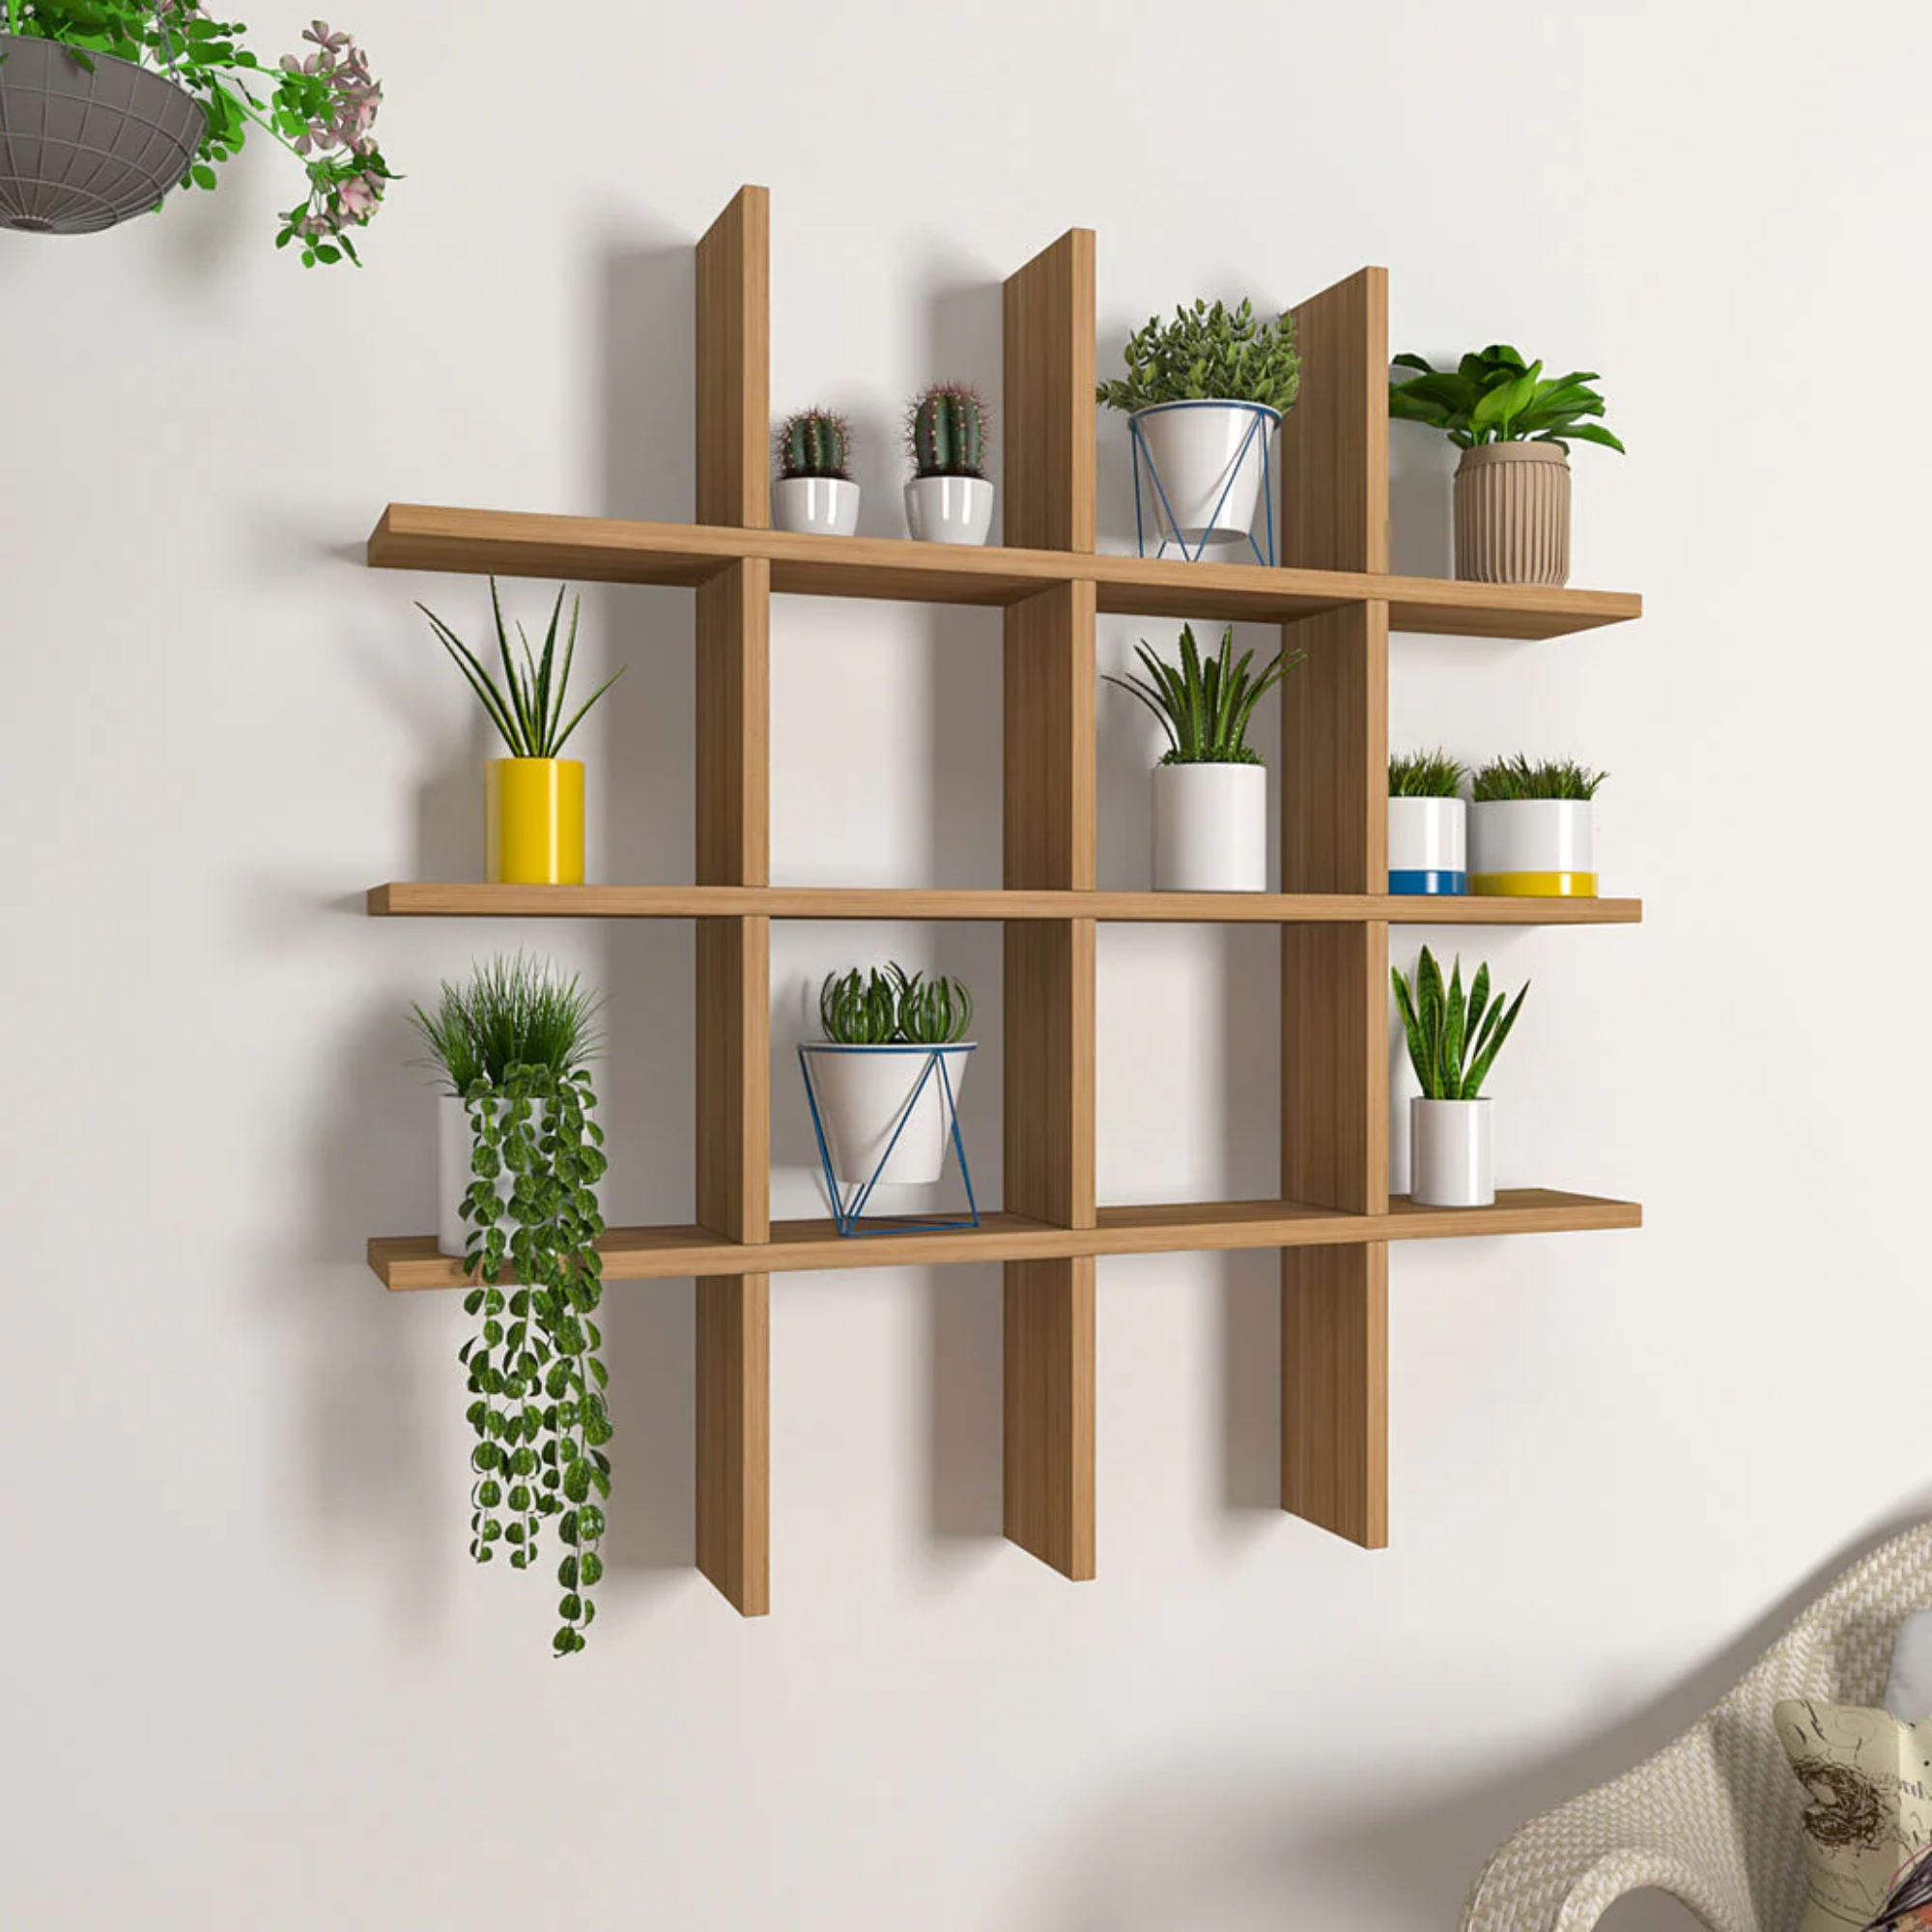 Aesthetic Block Designer With Light Oak Finish Planter Shelves